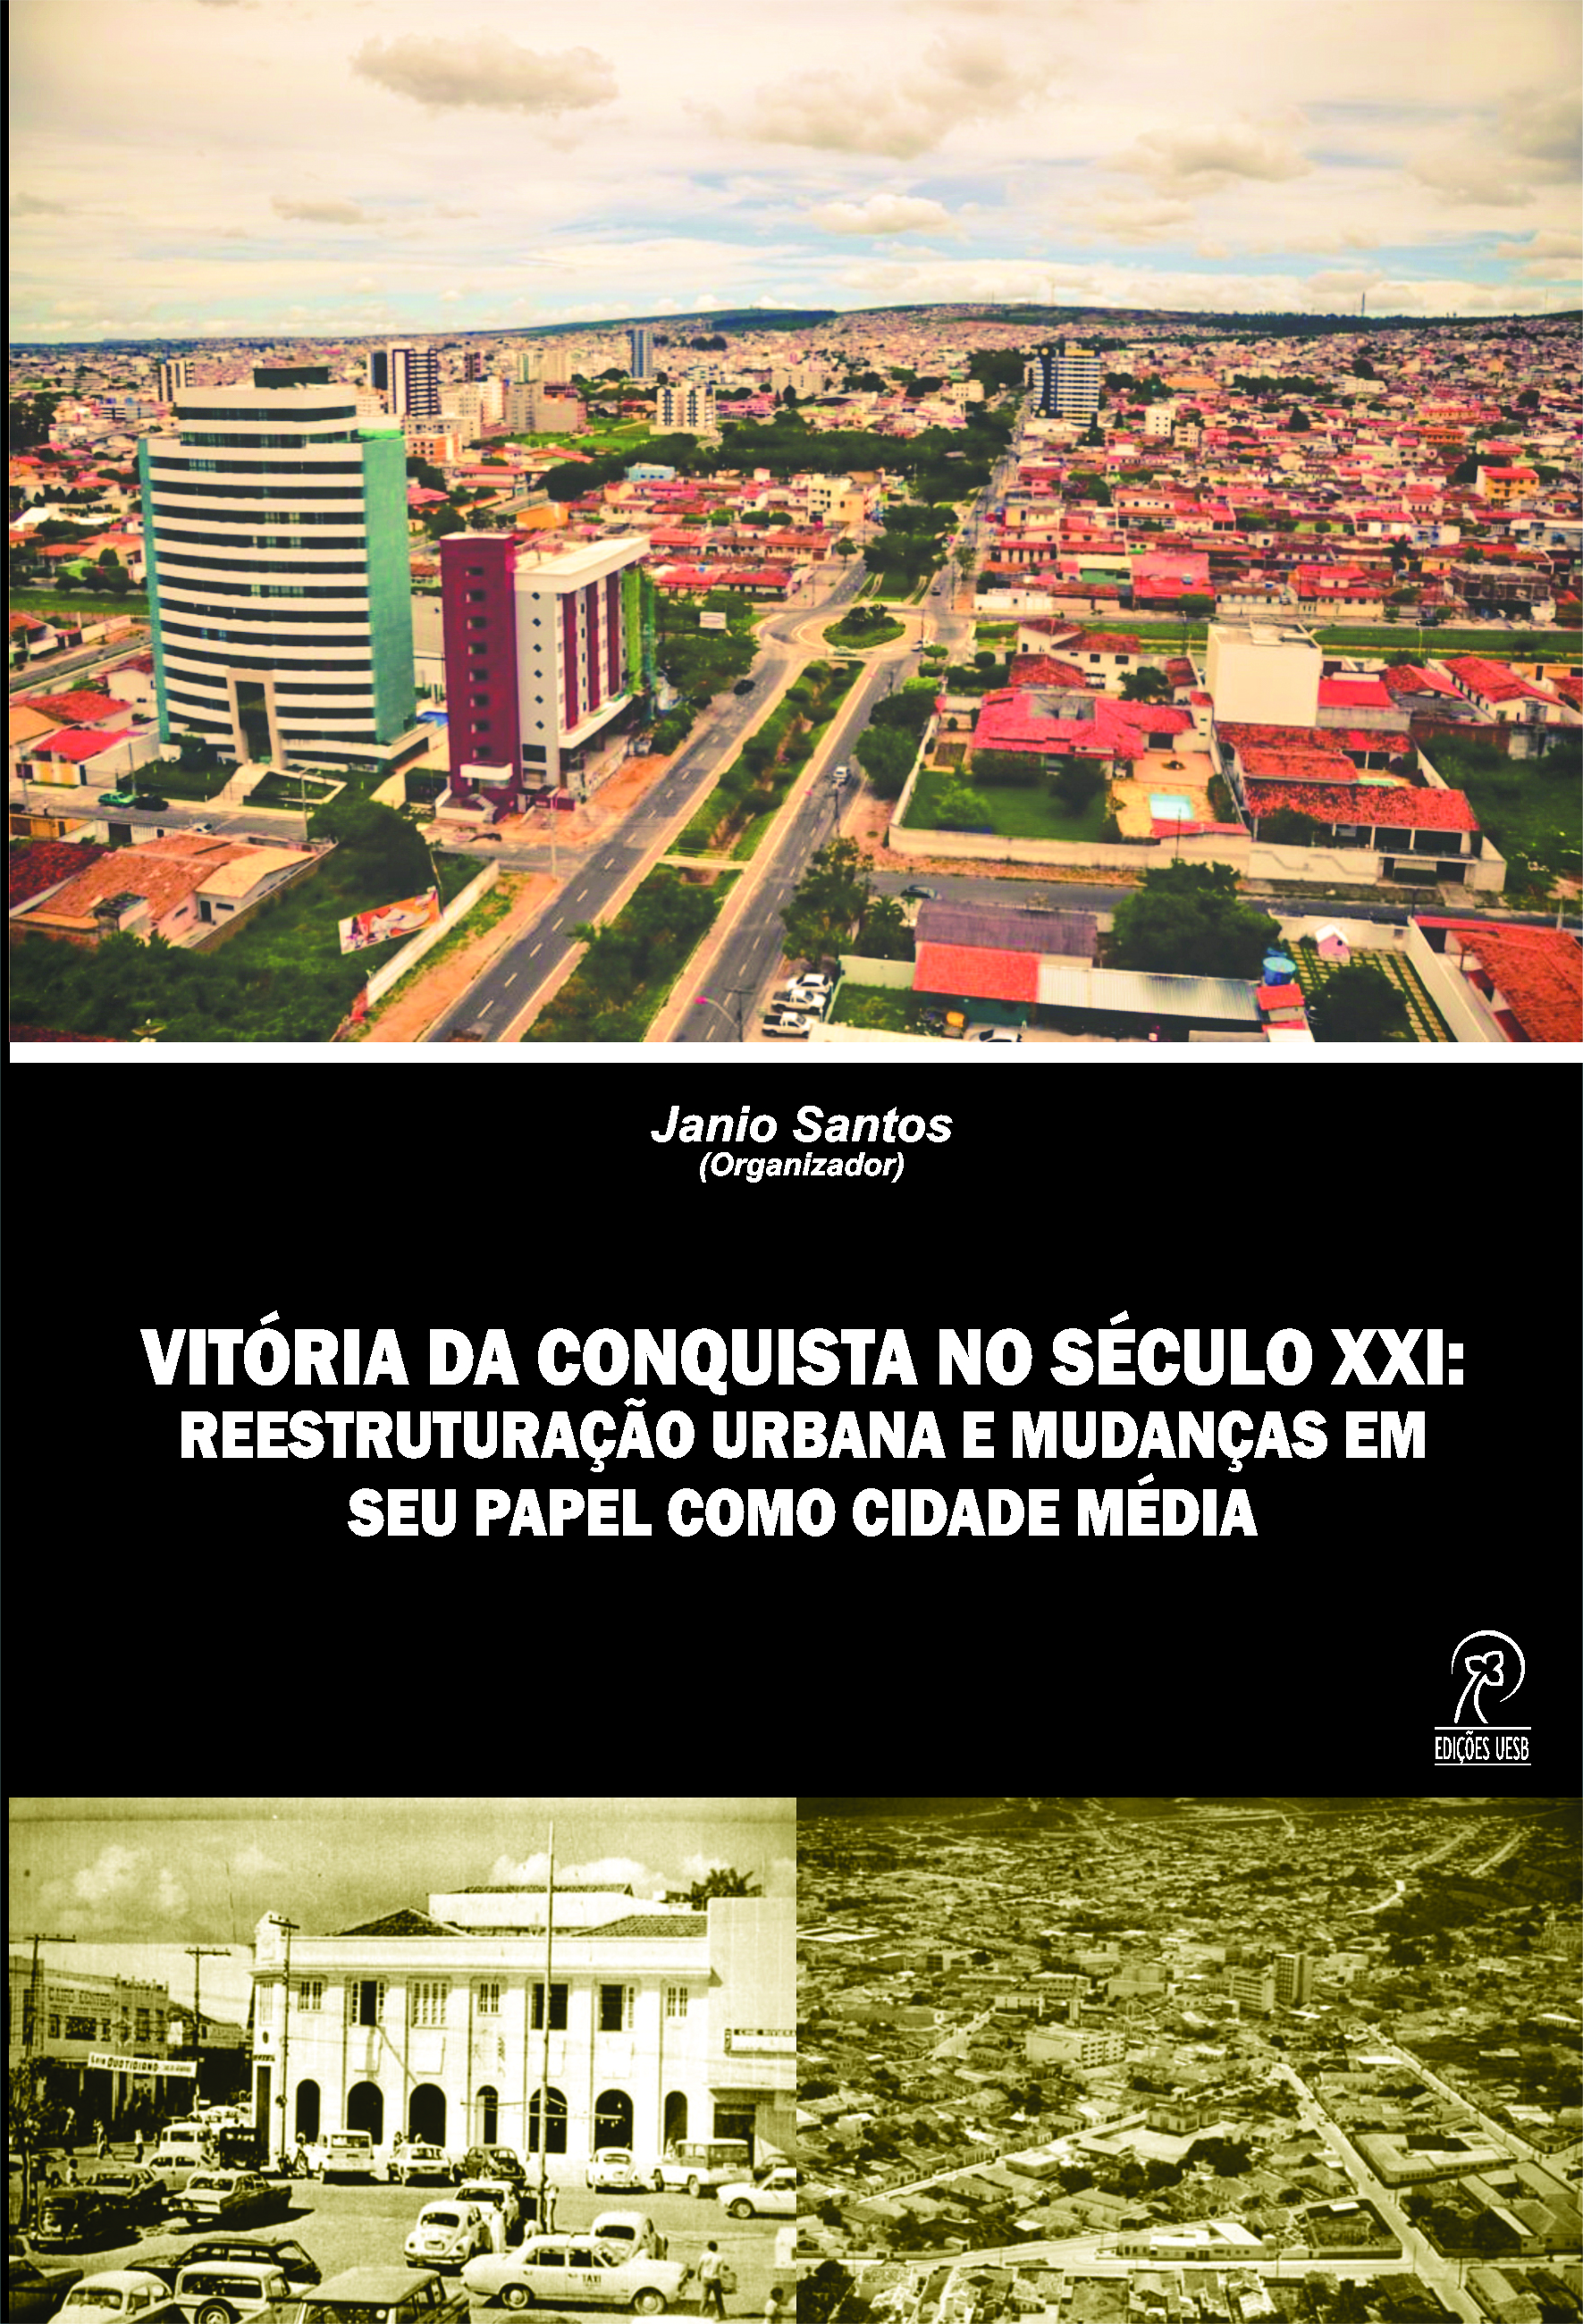 Vitória da Conquista no Século XXI: reestruturação urbana e mudanças em seu papel enquanto cidade média